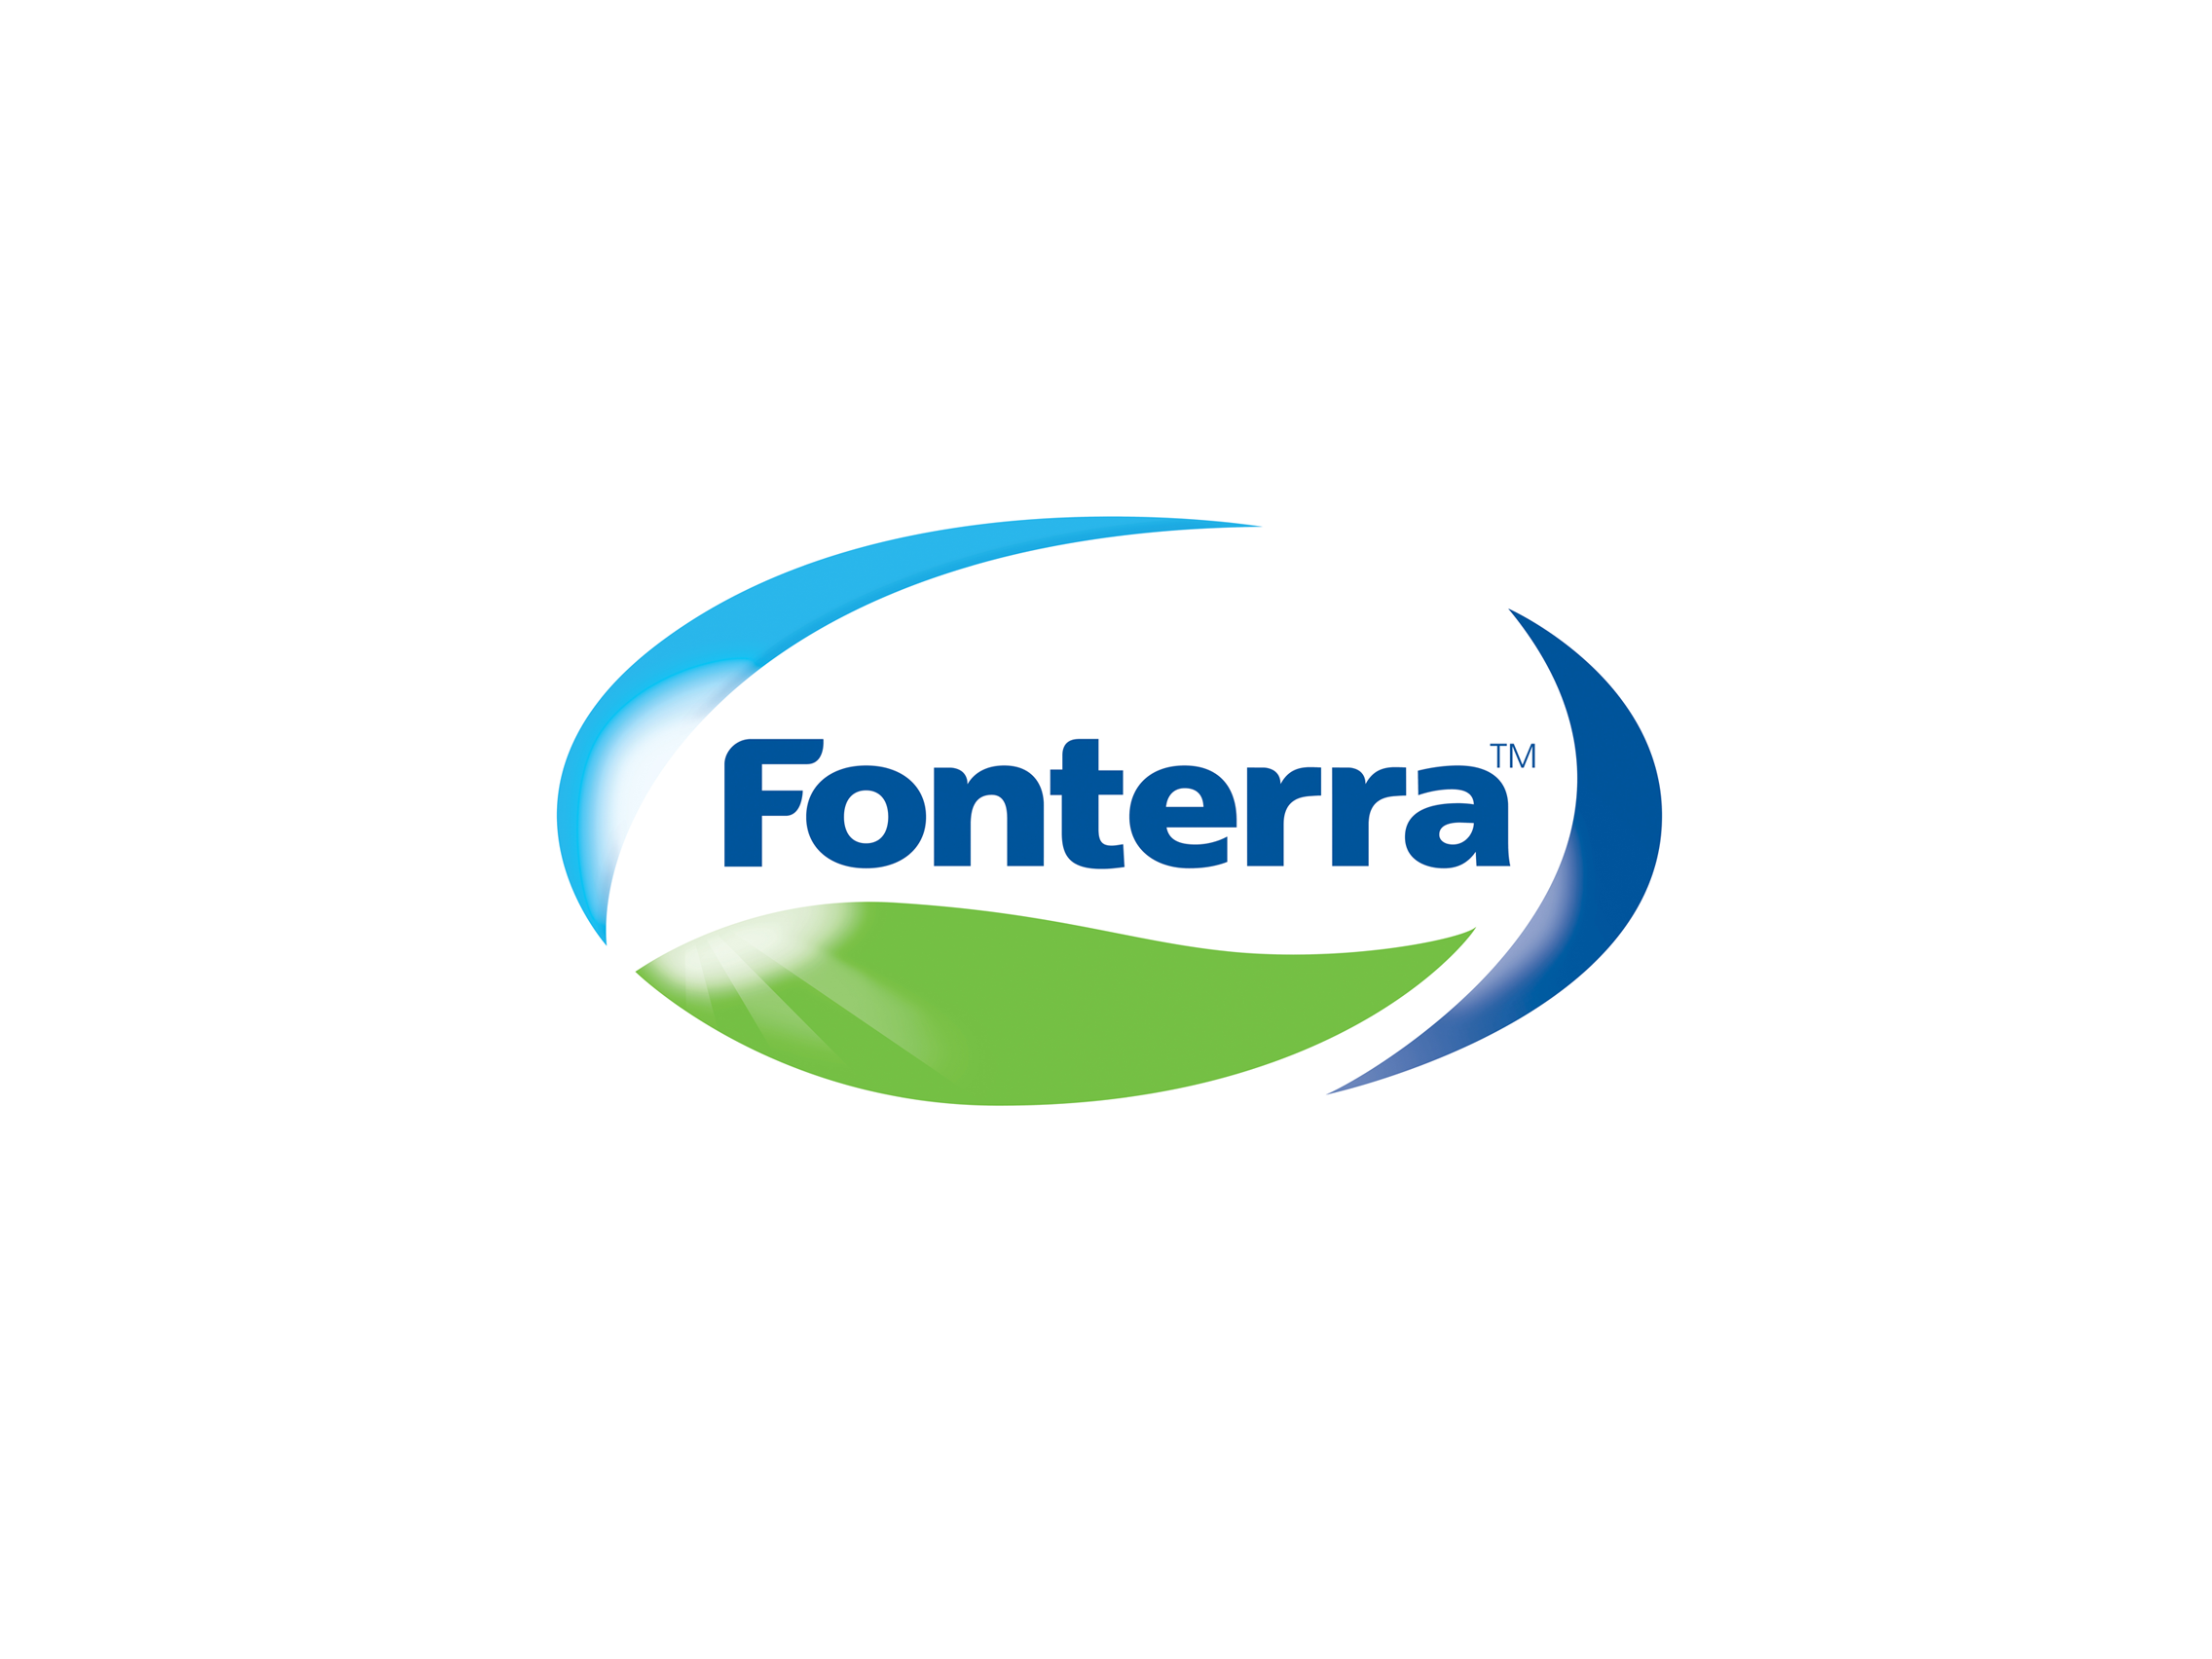 Logo Fonterra Png - Logo Fonterra Png Hdpng.com 2272, Transparent background PNG HD thumbnail